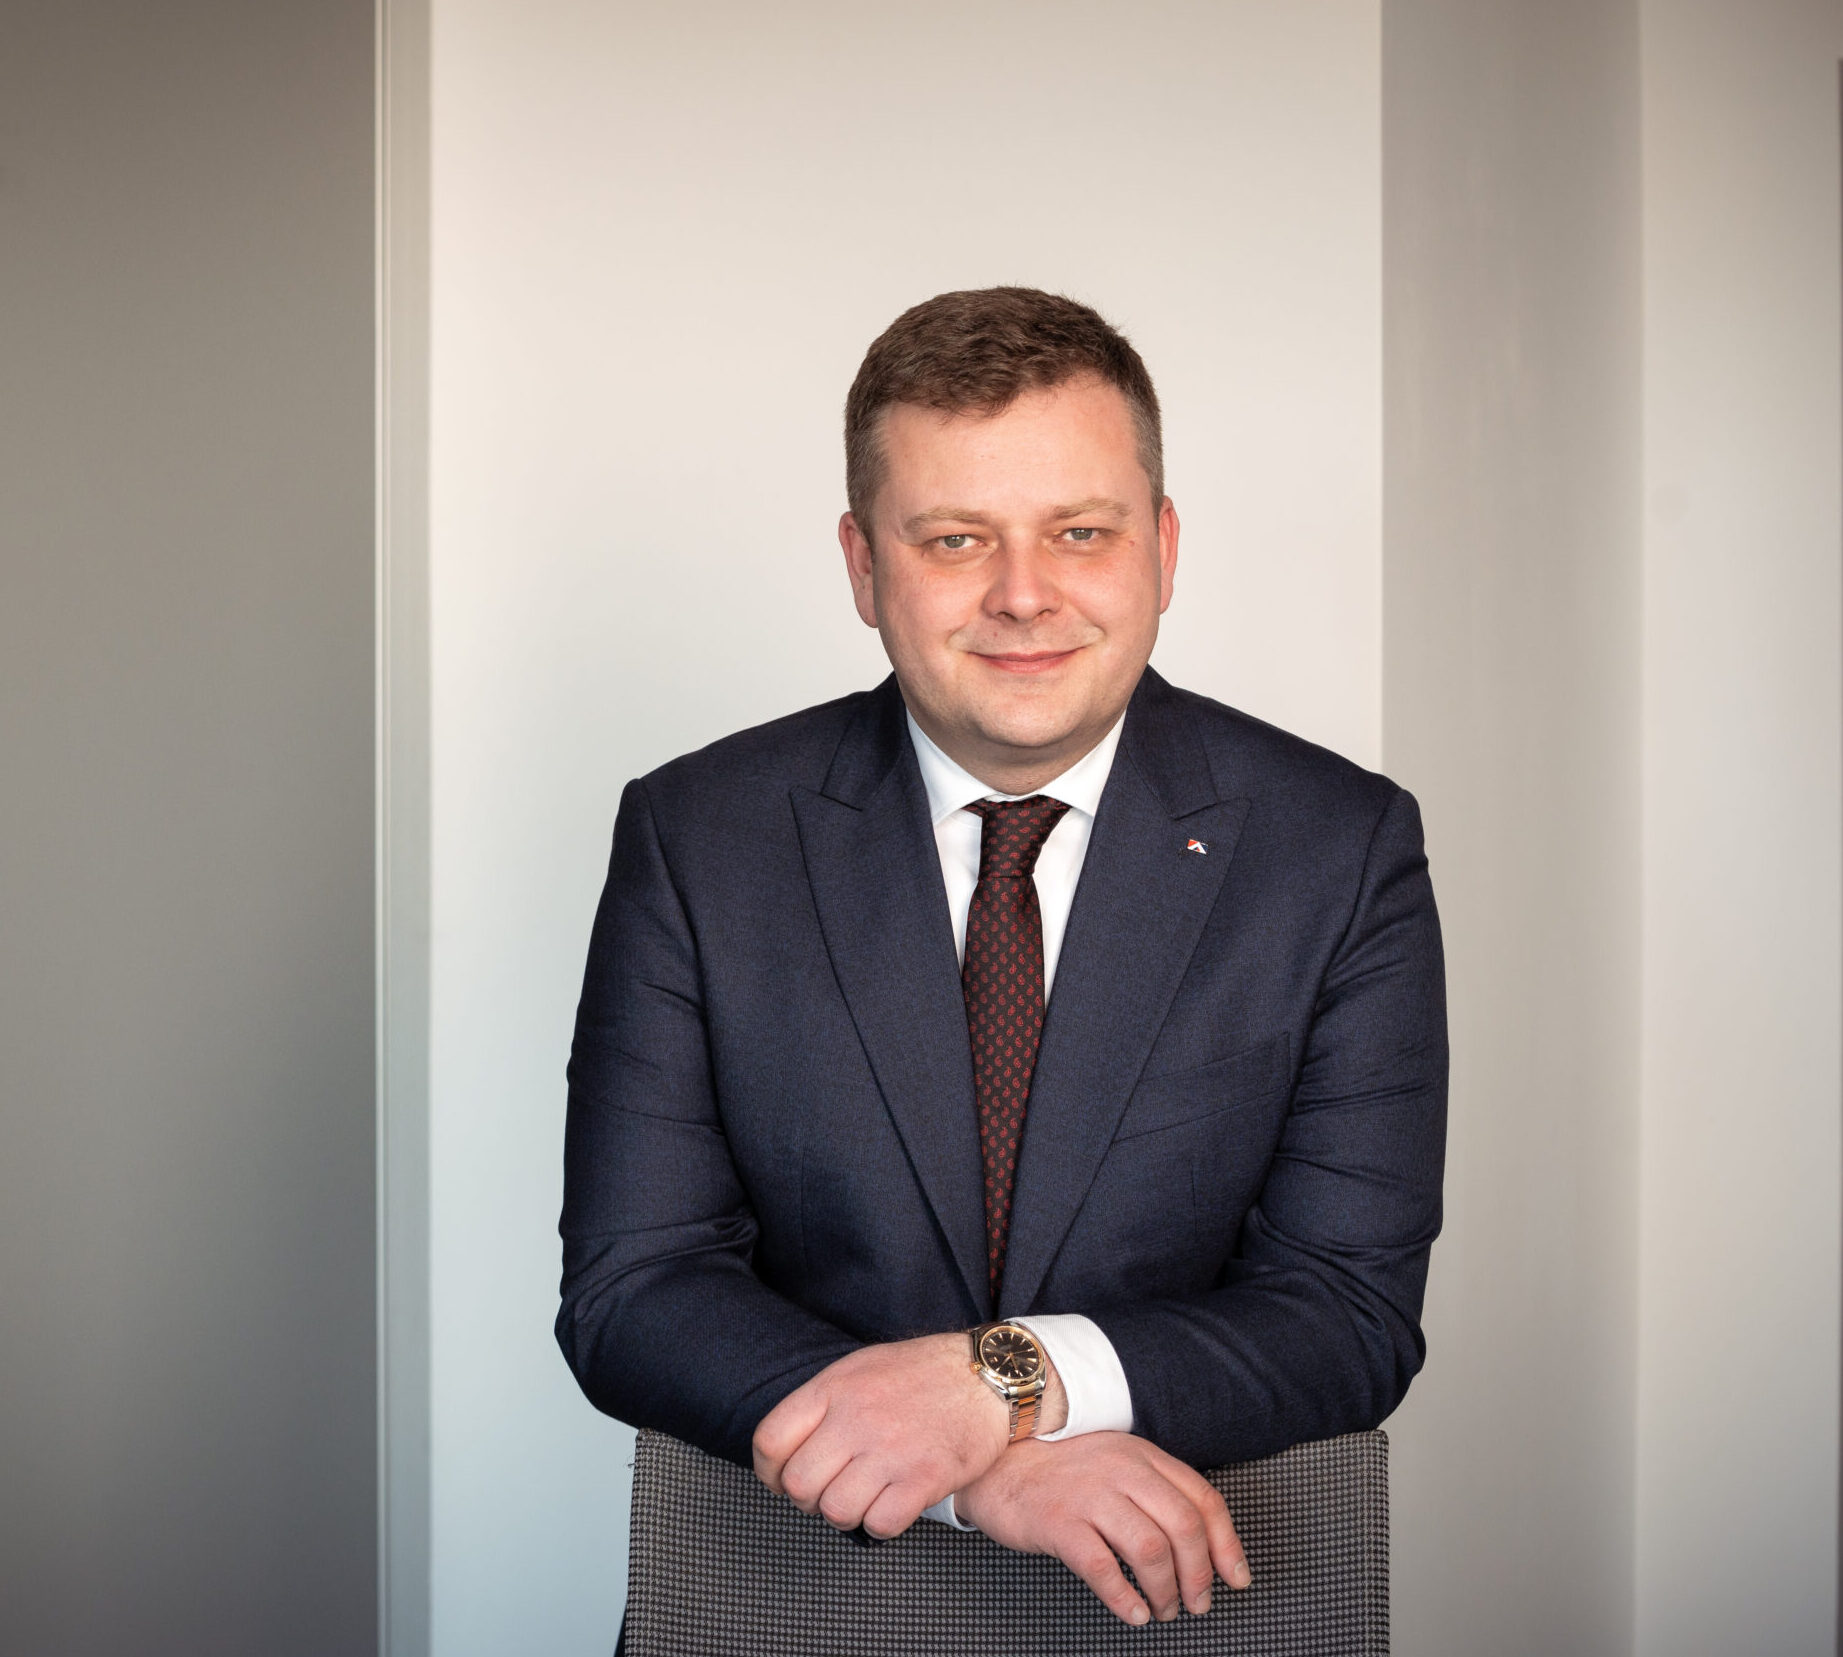 Alexandru Stânean, Director general, Grupul TeraPlast: Avem un Grup diversificat și acum urmează o etapă de consolidare în paralel cu dezvoltarea viitoare prin noi investiții și M&A